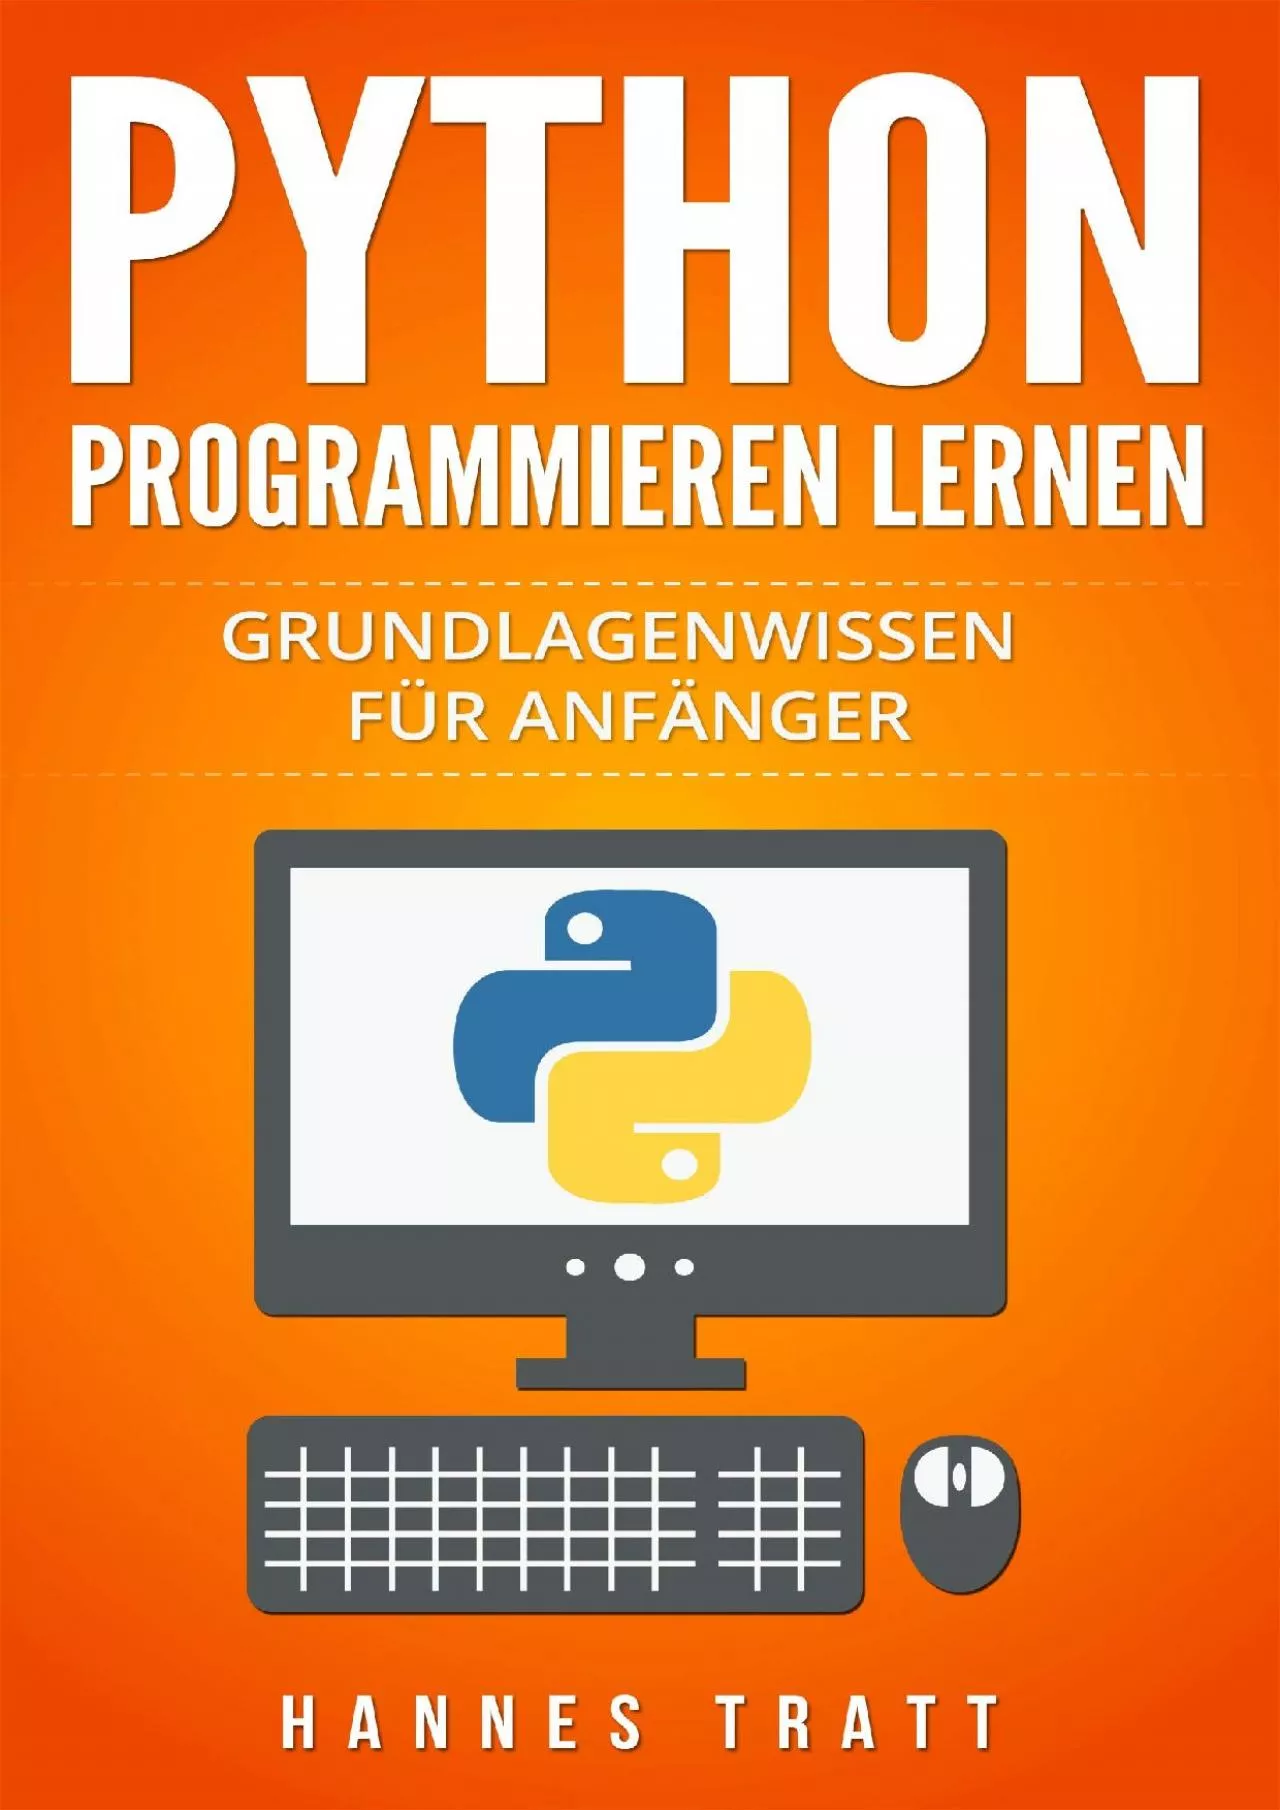 [eBOOK]-Python Programmieren lernen: Grundlagenwissen für Anfänger (German Edition)